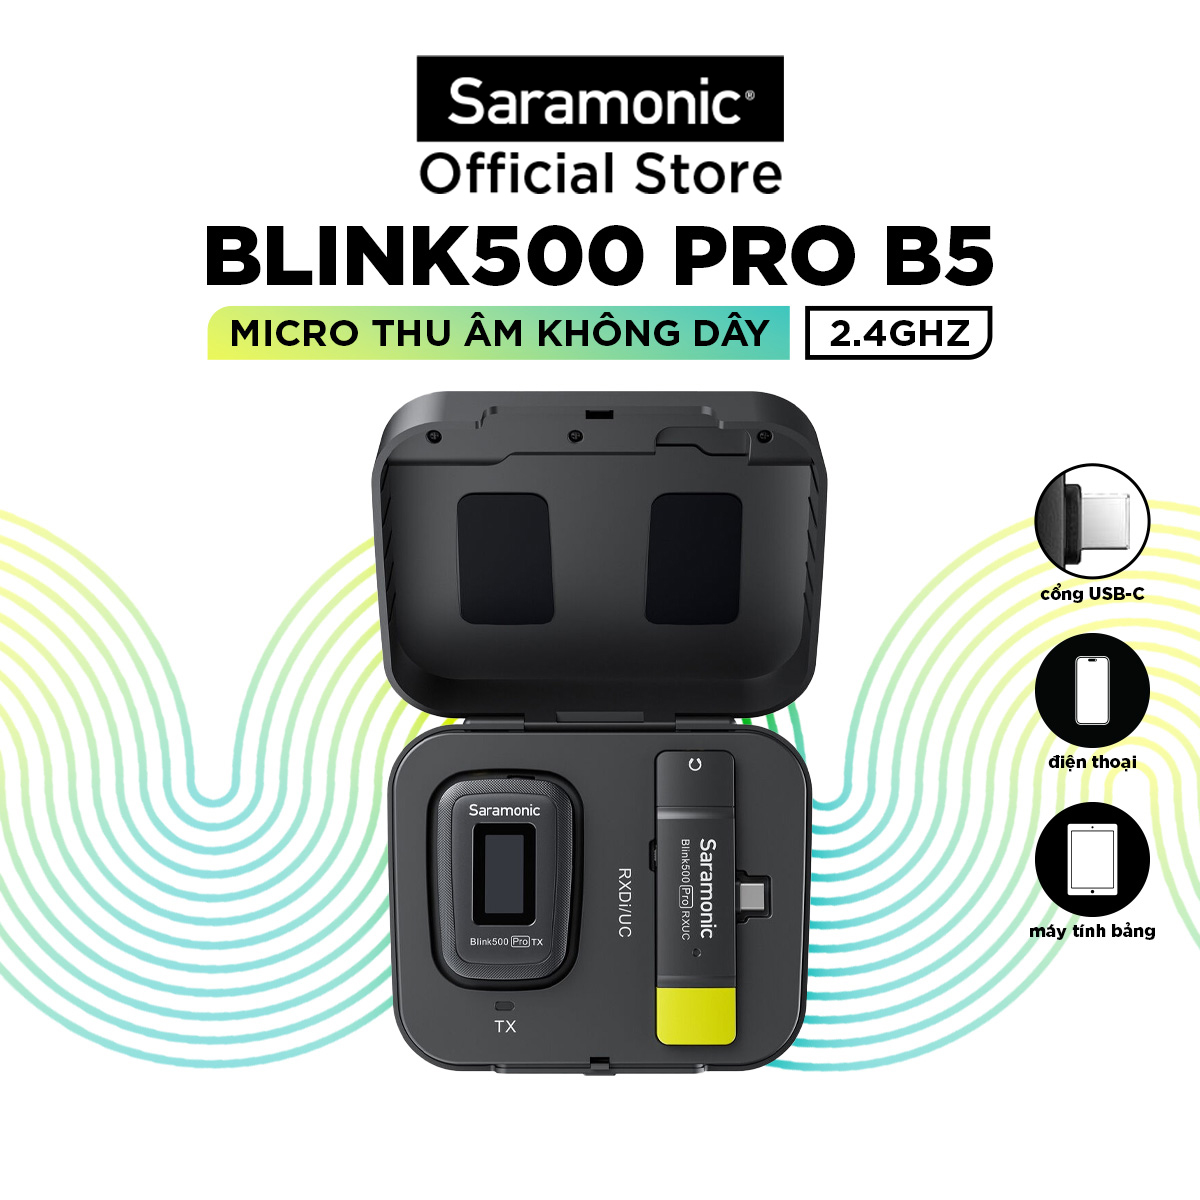 Bộ Micro Thu Âm Không Dây Saramonic Blink500 Pro B5 Cho Điện Thoại Thông Minh Hệ Điều Hành Android - Livestream/ Phỏng Vấn/ Quay Video - Hàng Chính Hãng